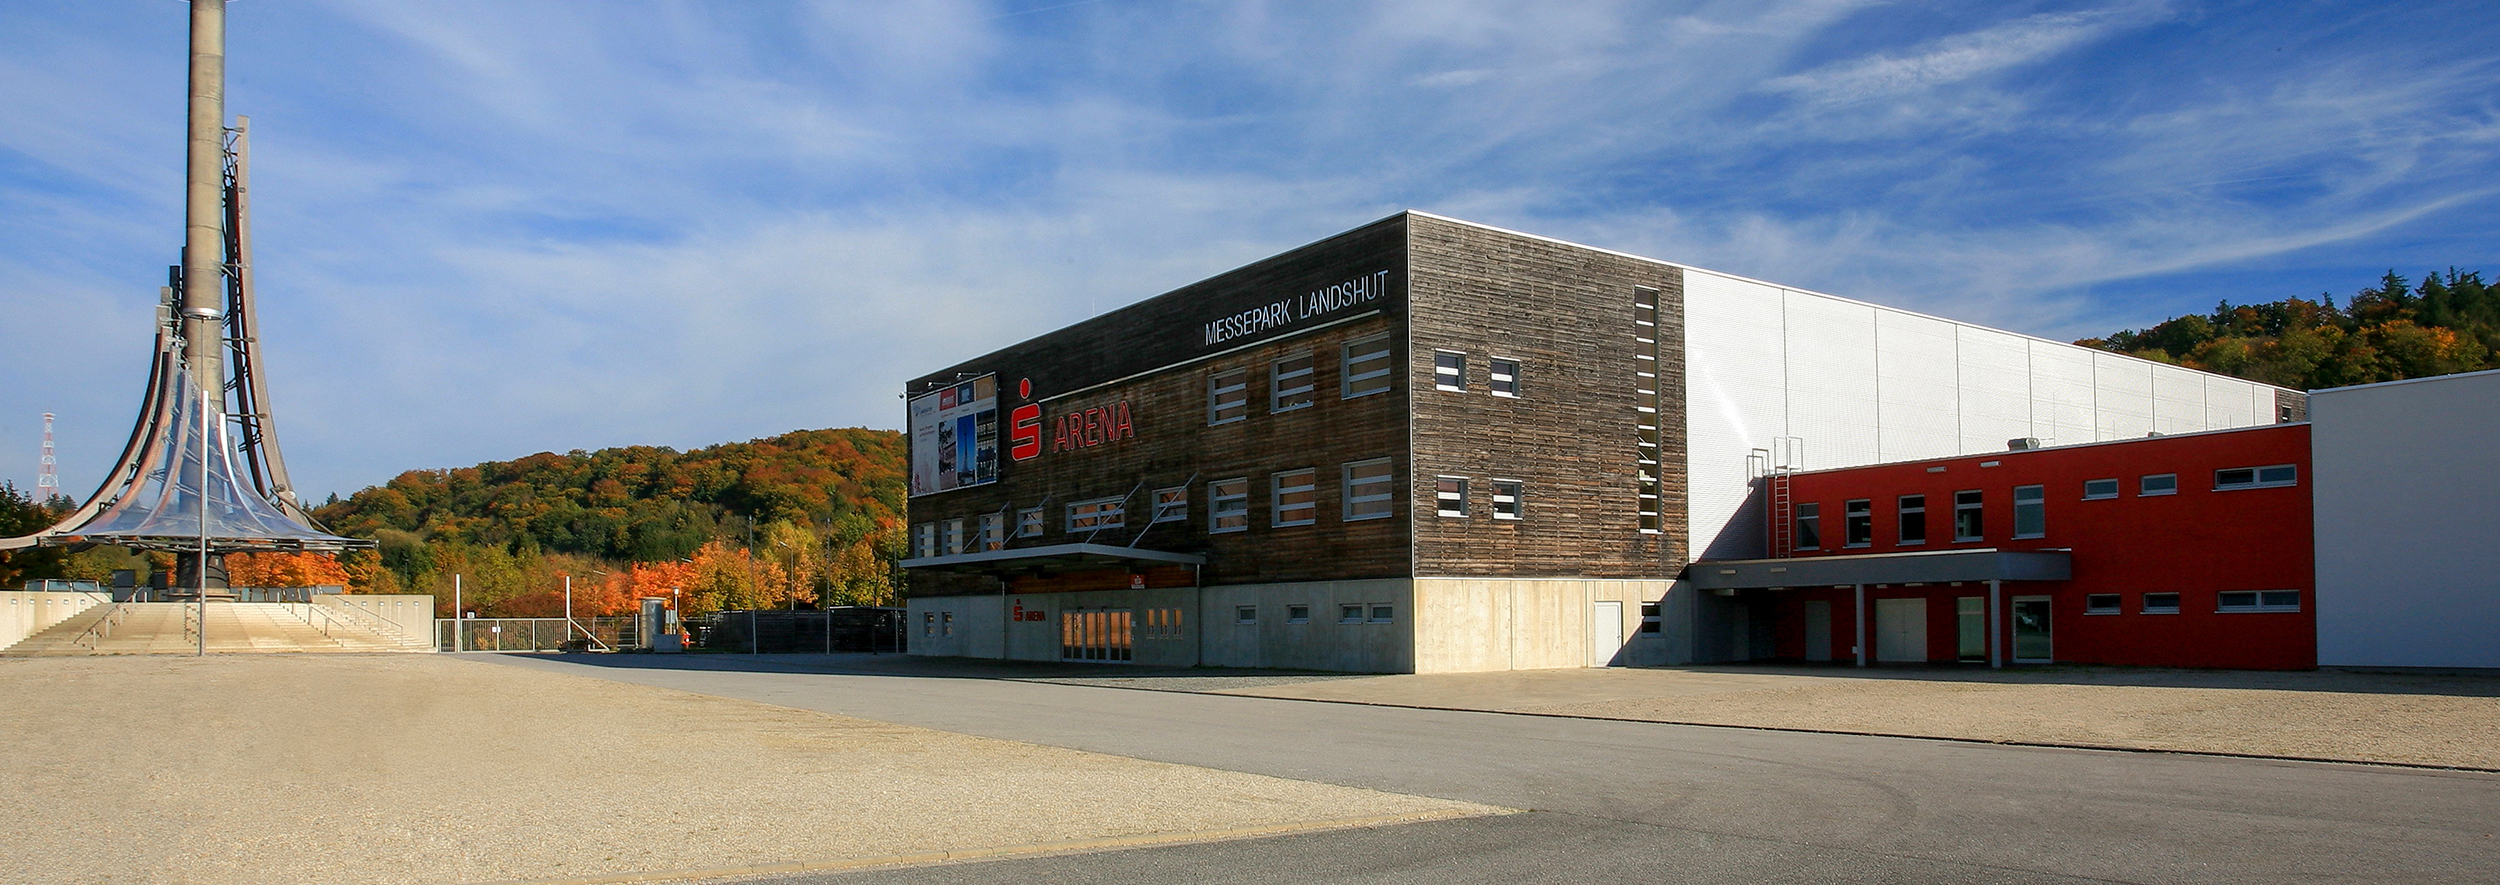 Sparkassen-Arena in Landshut